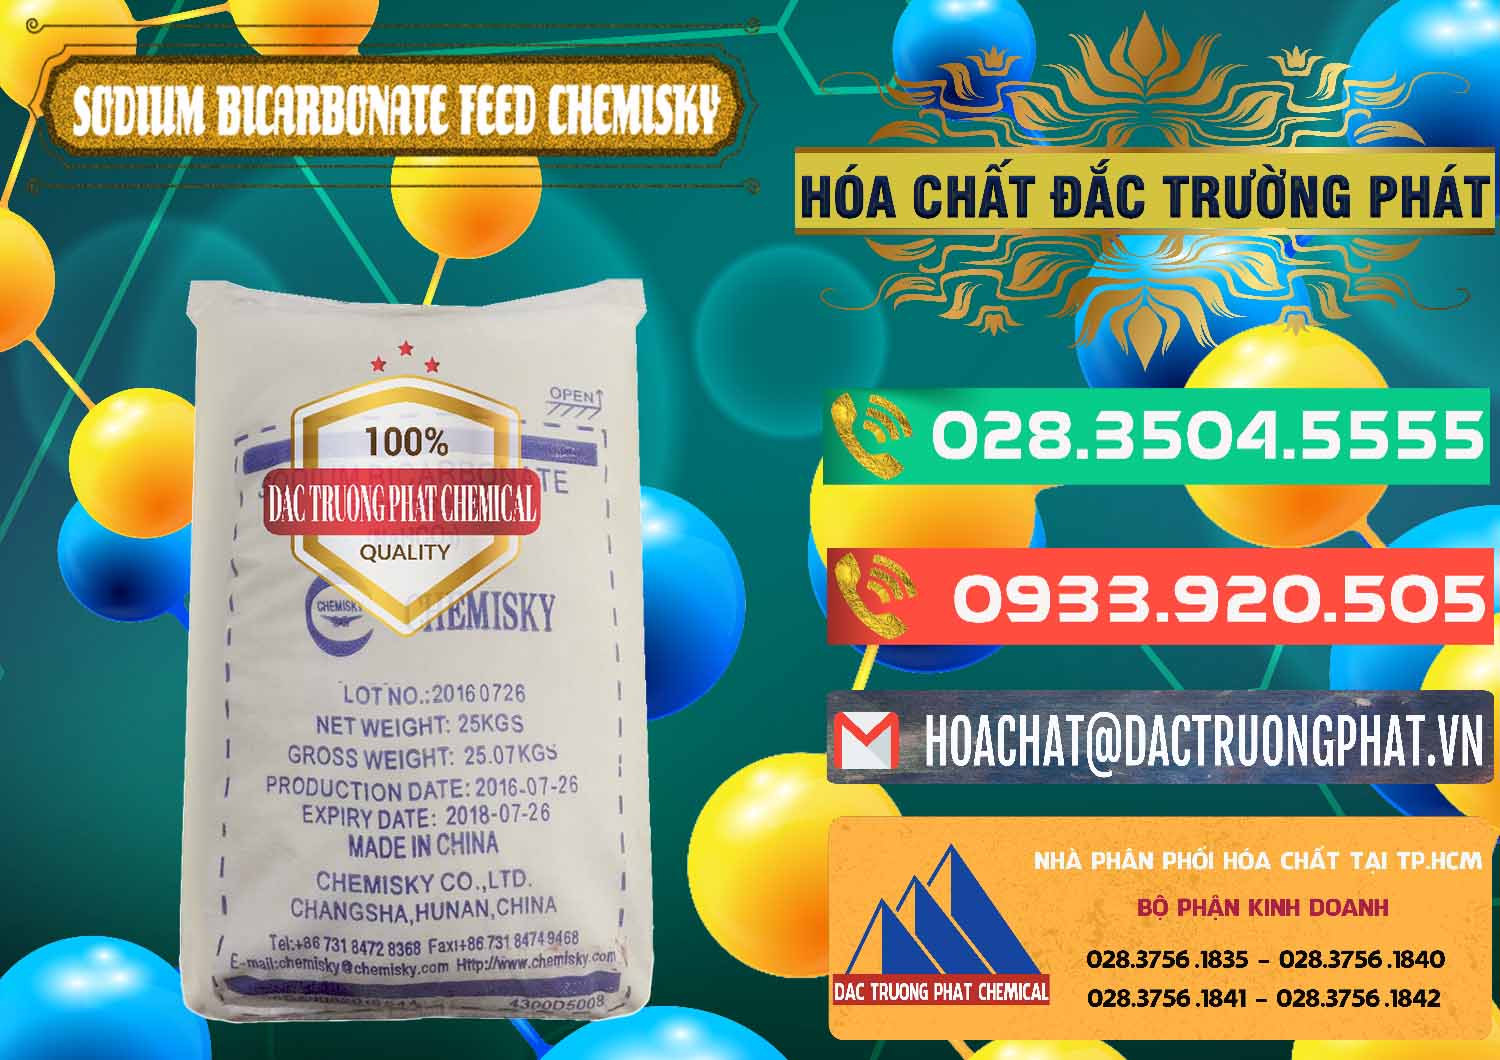 Đơn vị bán và cung cấp Sodium Bicarbonate – Bicar NaHCO3 Feed Grade Chemisky Trung Quốc China - 0264 - Cty chuyên phân phối ( kinh doanh ) hóa chất tại TP.HCM - congtyhoachat.com.vn